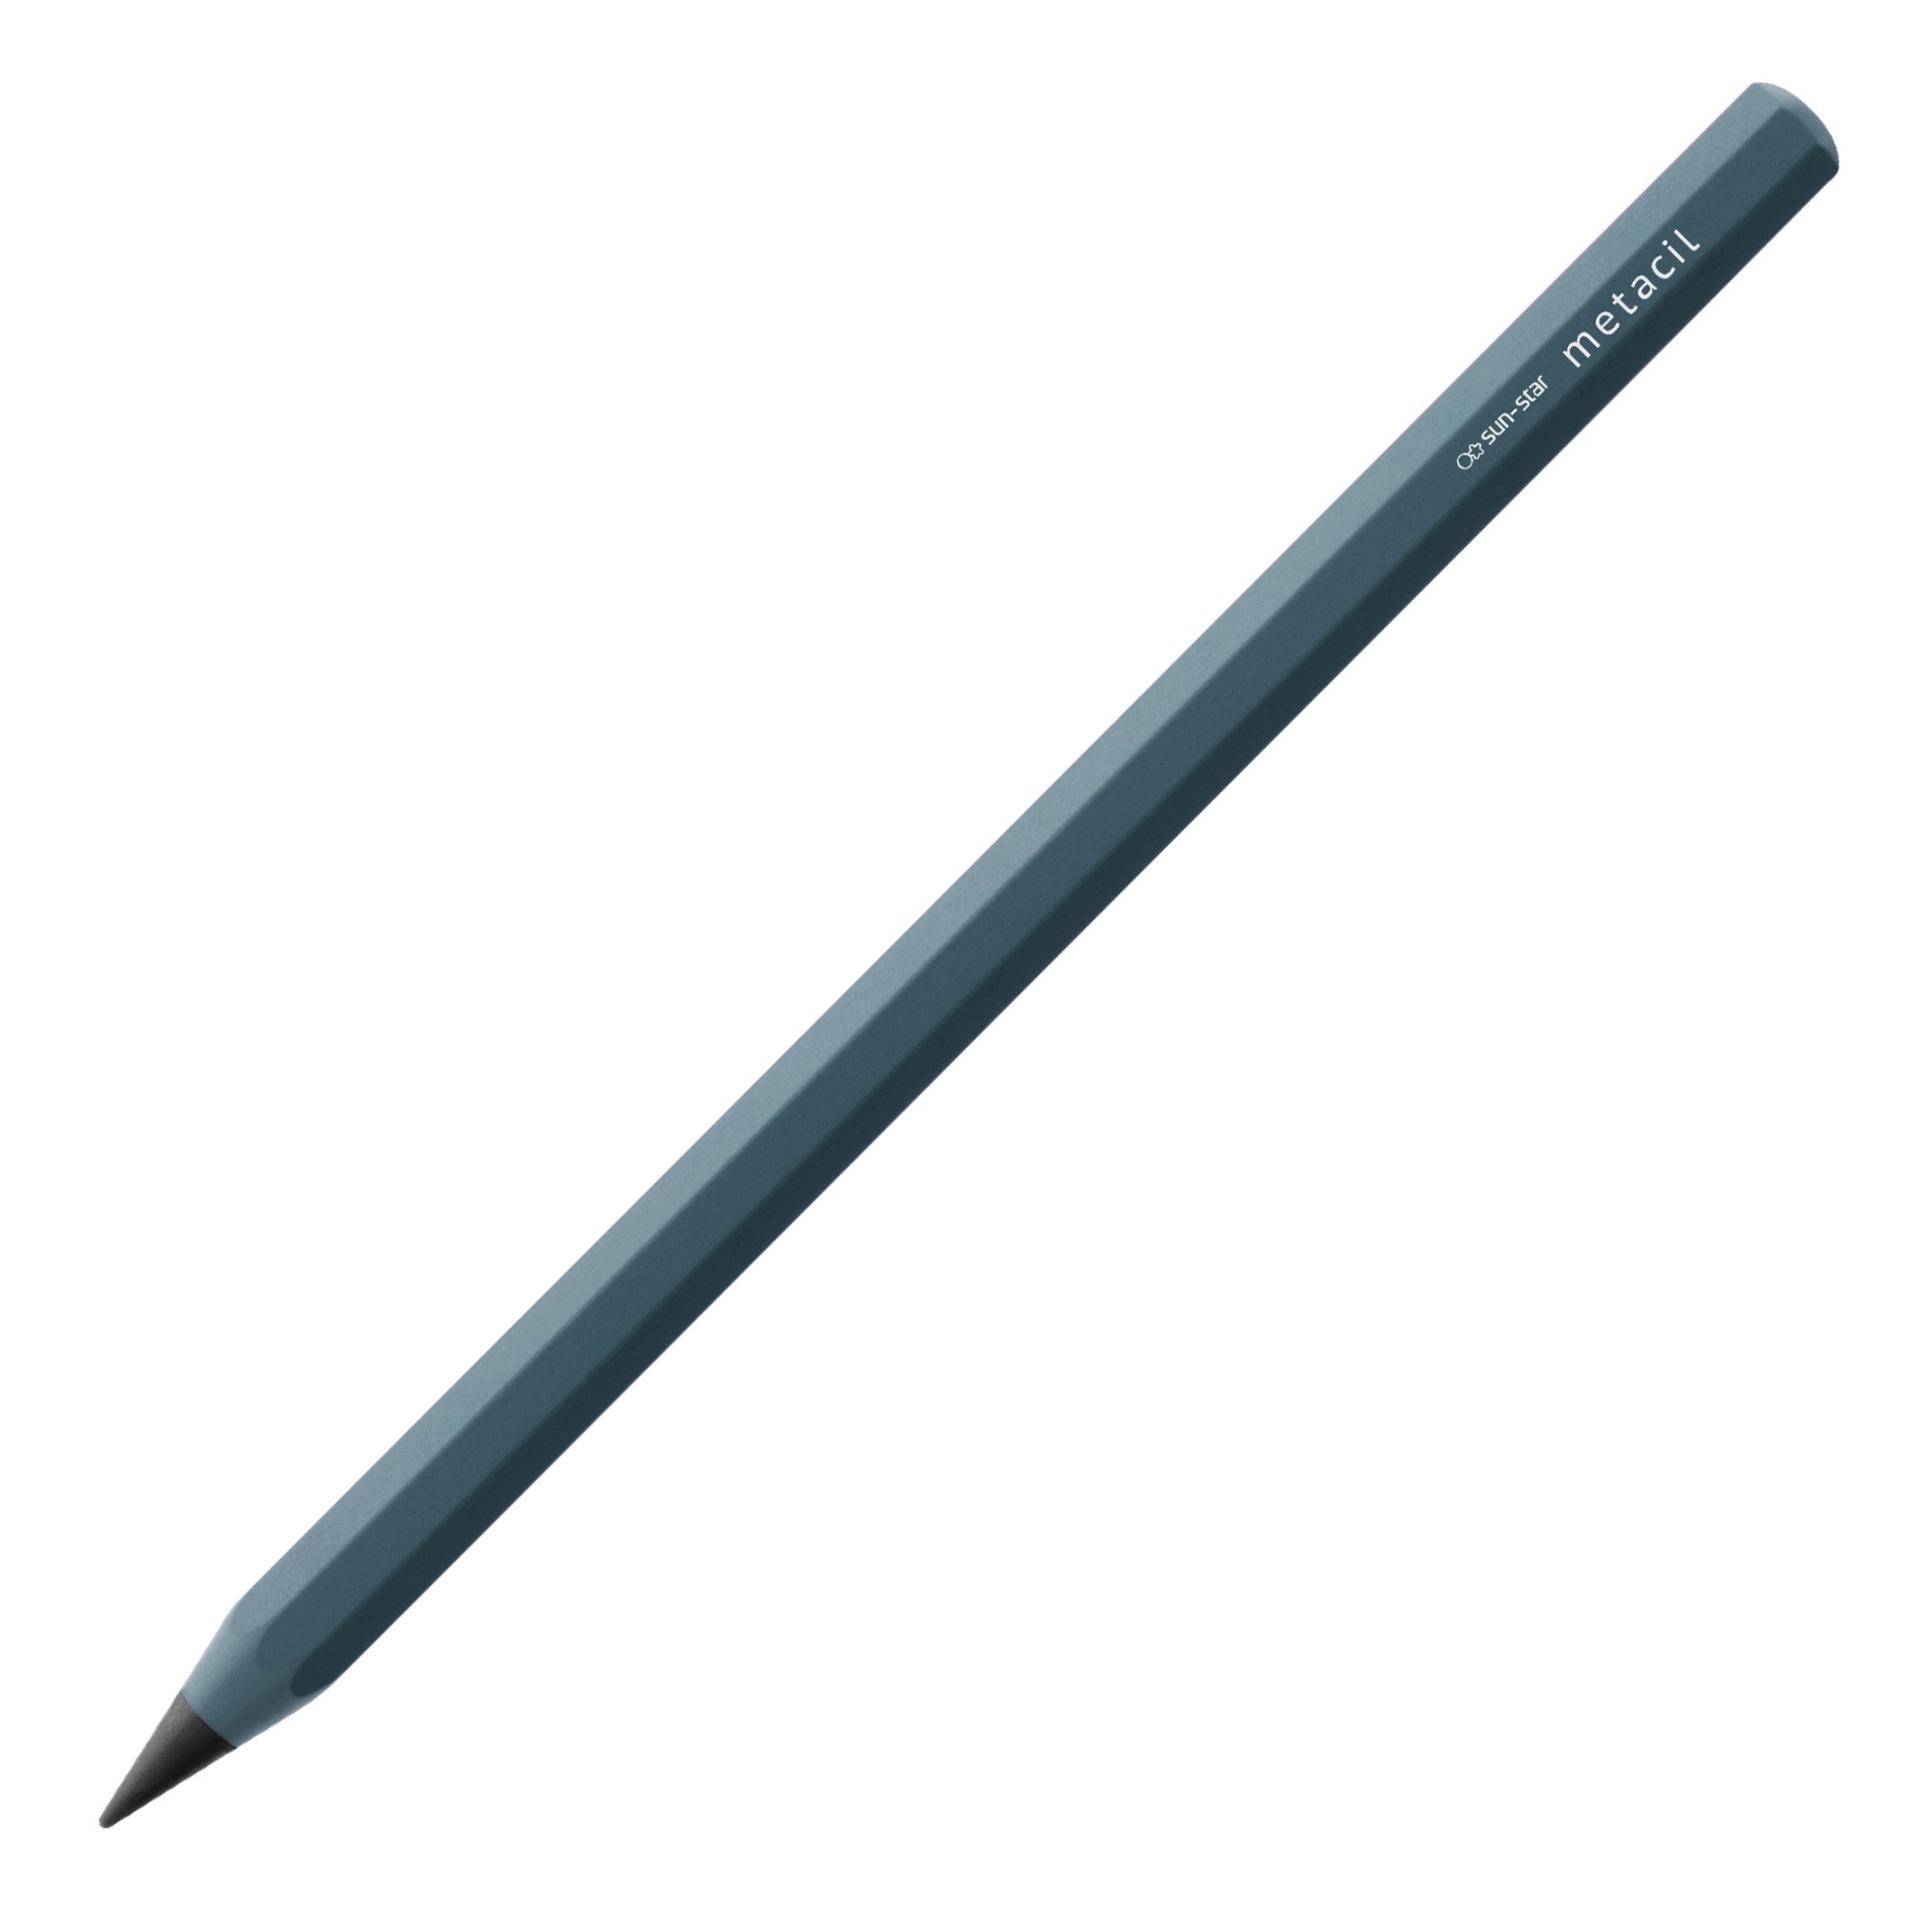  SUN-STAR Stationery S4482662 Metal Pencil, Metacil